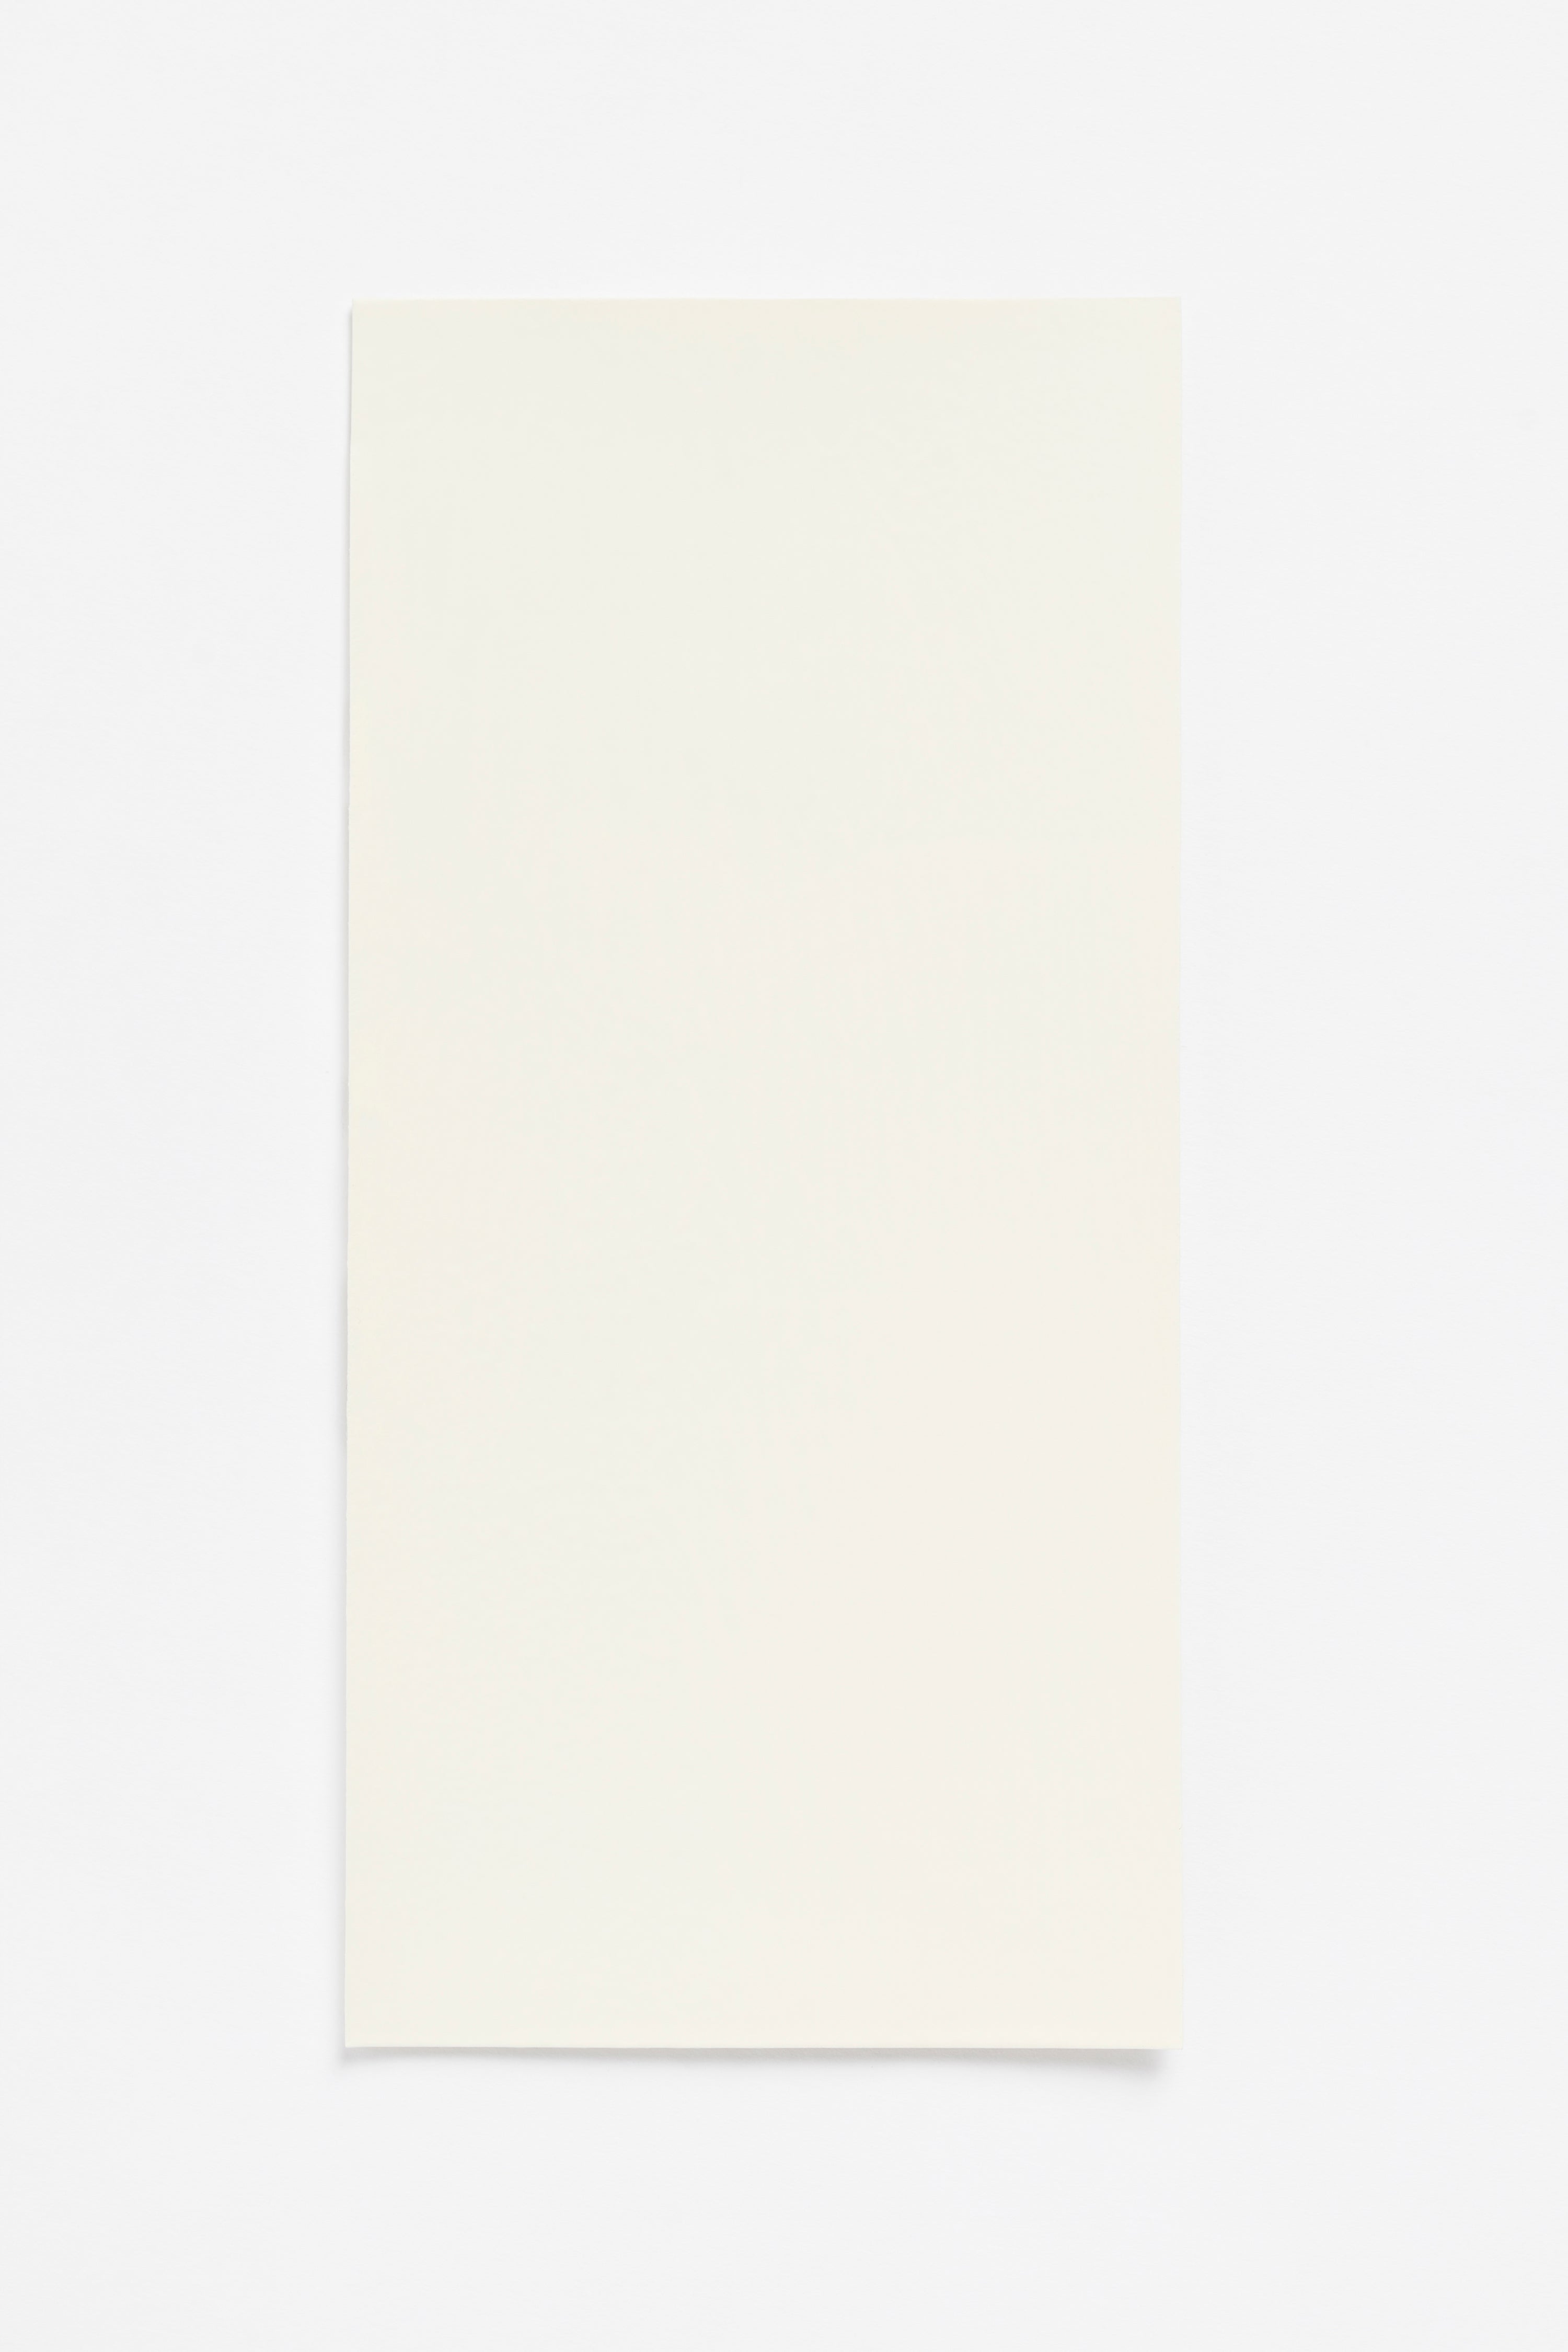 Butter Light — a paint colour developed by Sabine Marcelis for Blēo